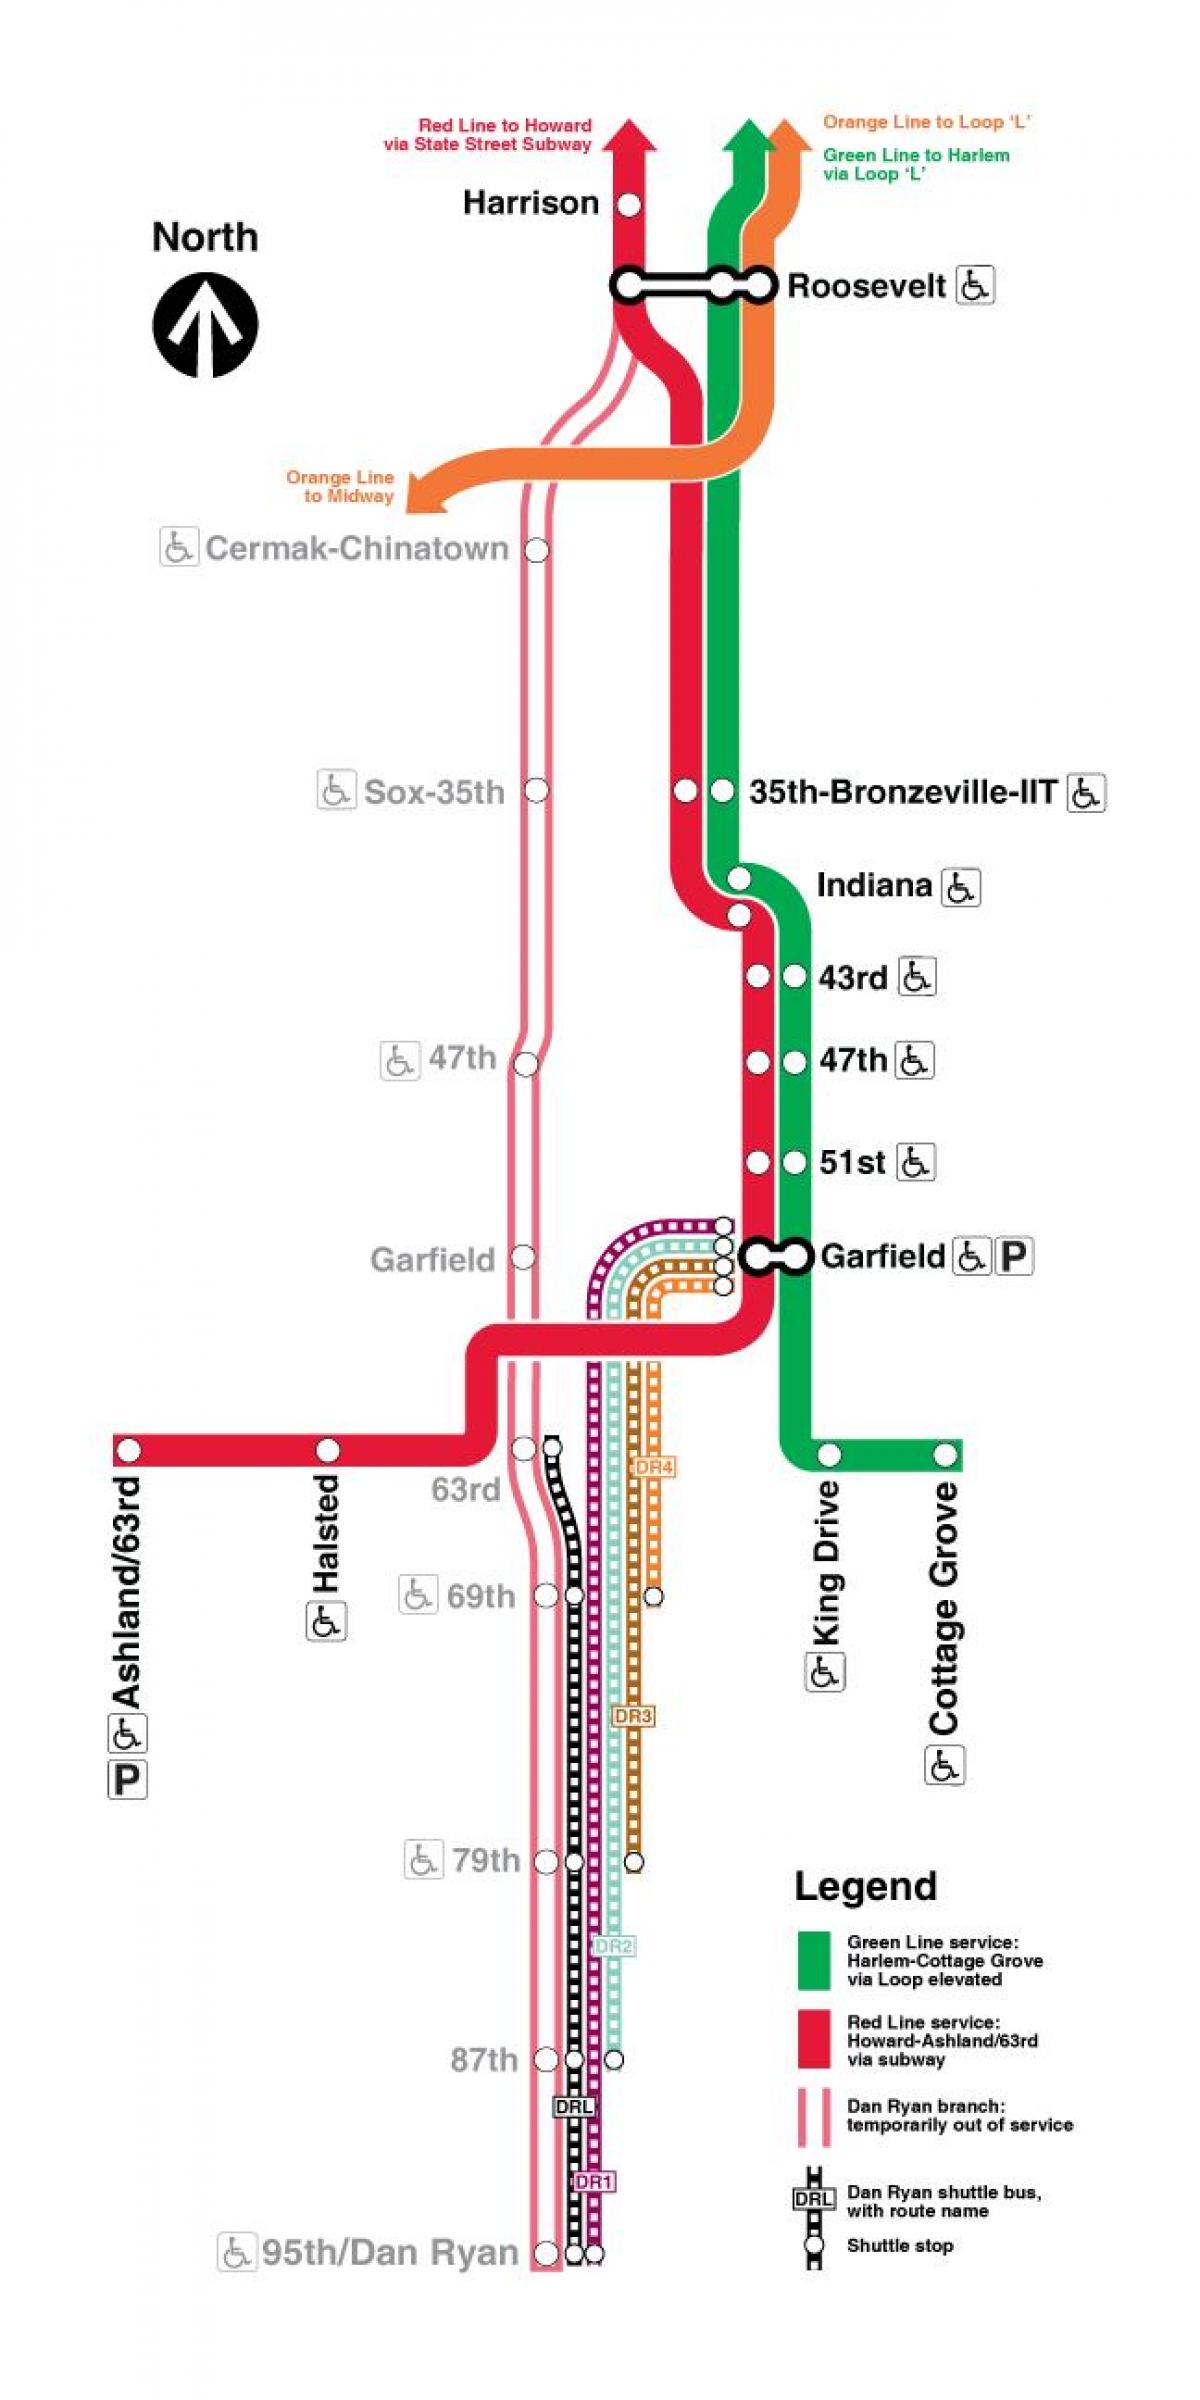 Chicago pociągu na mapie czerwoną linią